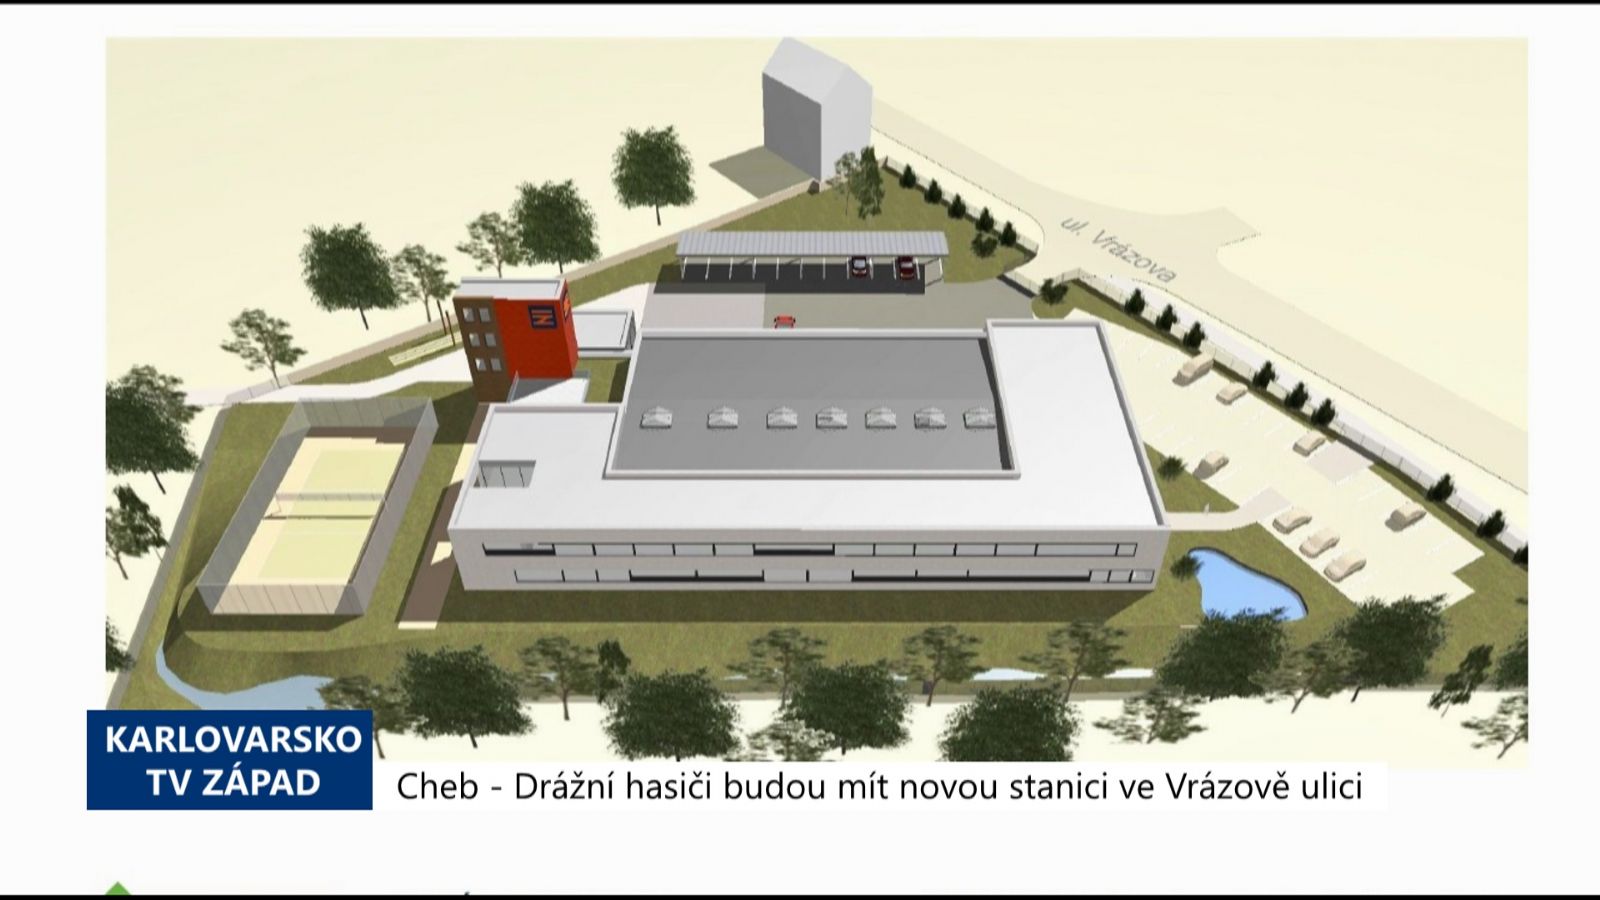  Cheb: Drážní hasiči budou mít novou stanici ve Vrázově ulici (TV Západ)